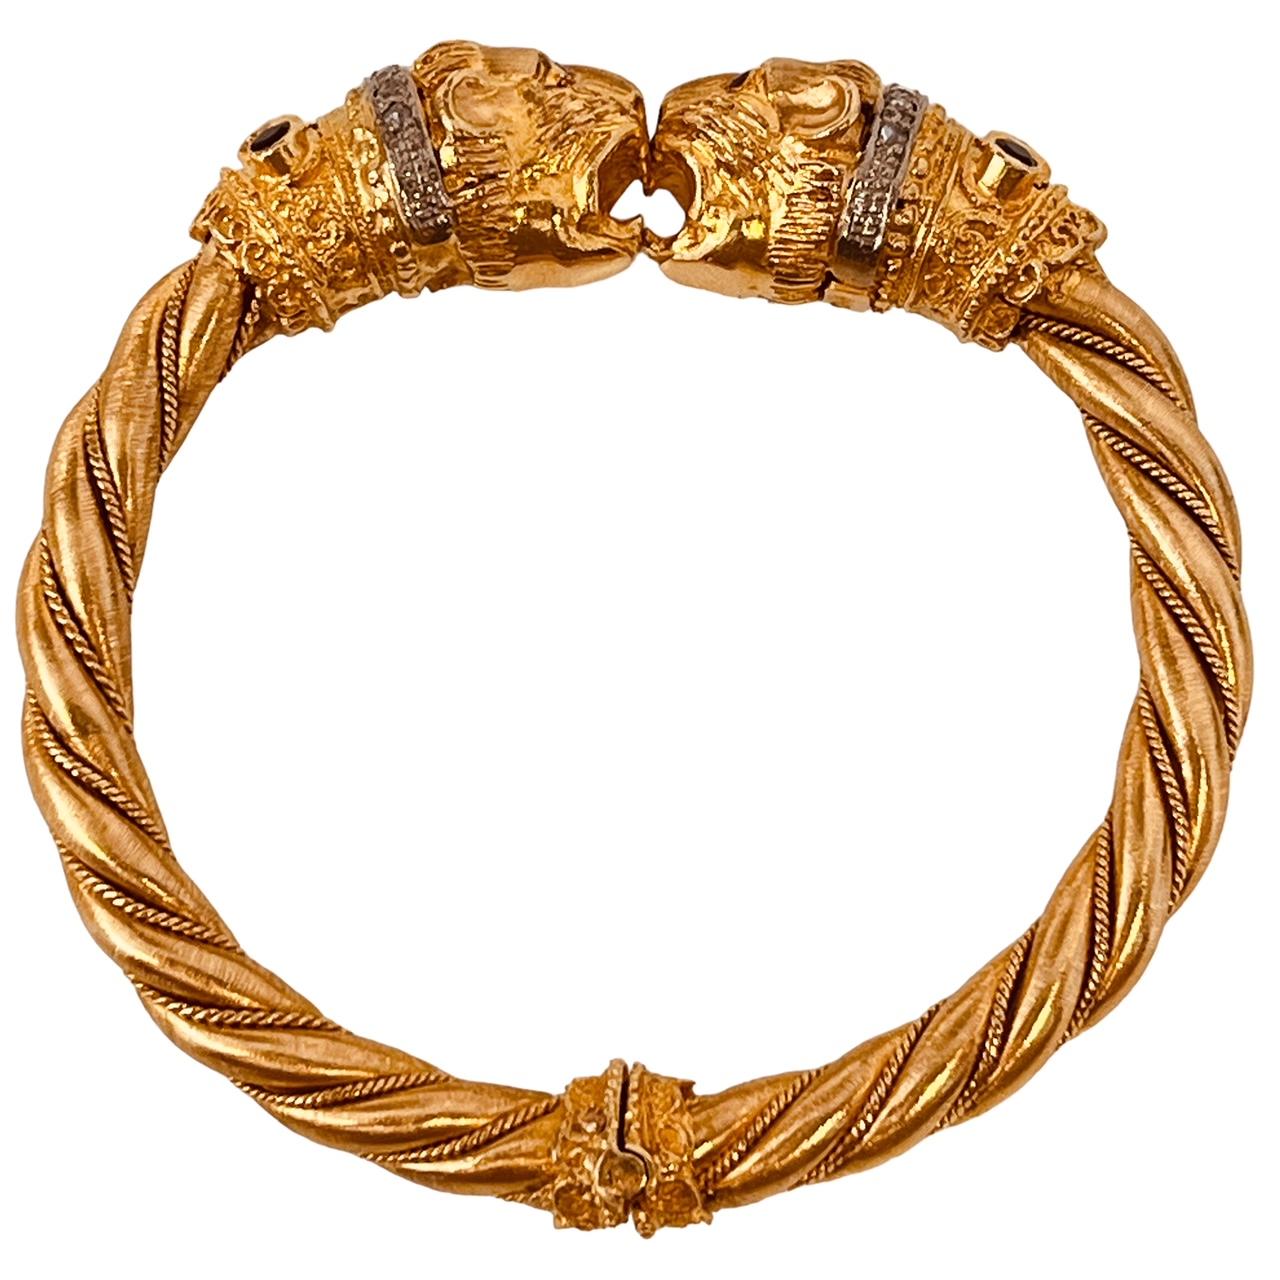 Bracelet en or jaune 18ct, torsadé, avec des terminaisons en forme de tête de lion. Les cols sont sertis de diamants, de saphirs et d'émeraudes, avec des yeux en rubis. Circa 1969/70. 63,7 grammes. Diamètre intérieur d'environ 5,5 cm. Avec la marque